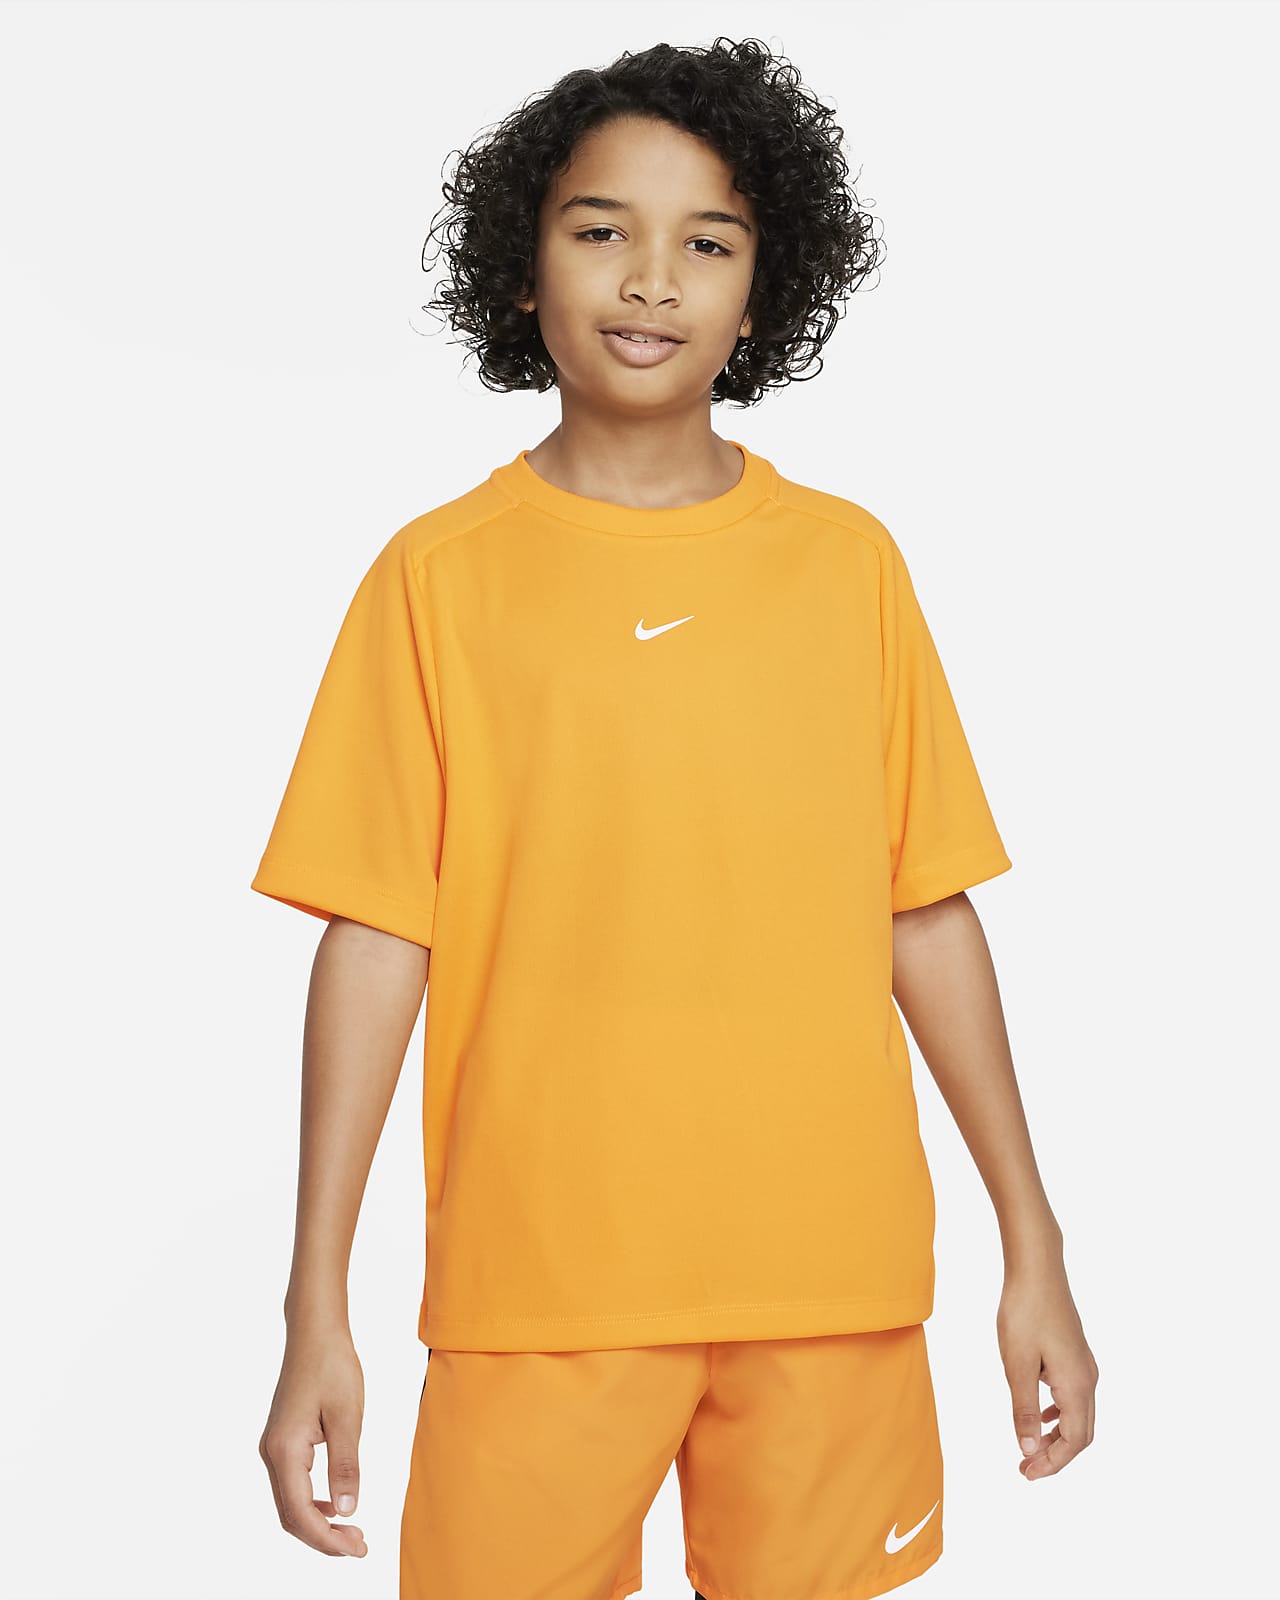 เสื้อเทรนนิ่ง Dri-FIT เด็กโต Nike Multi (ชาย)